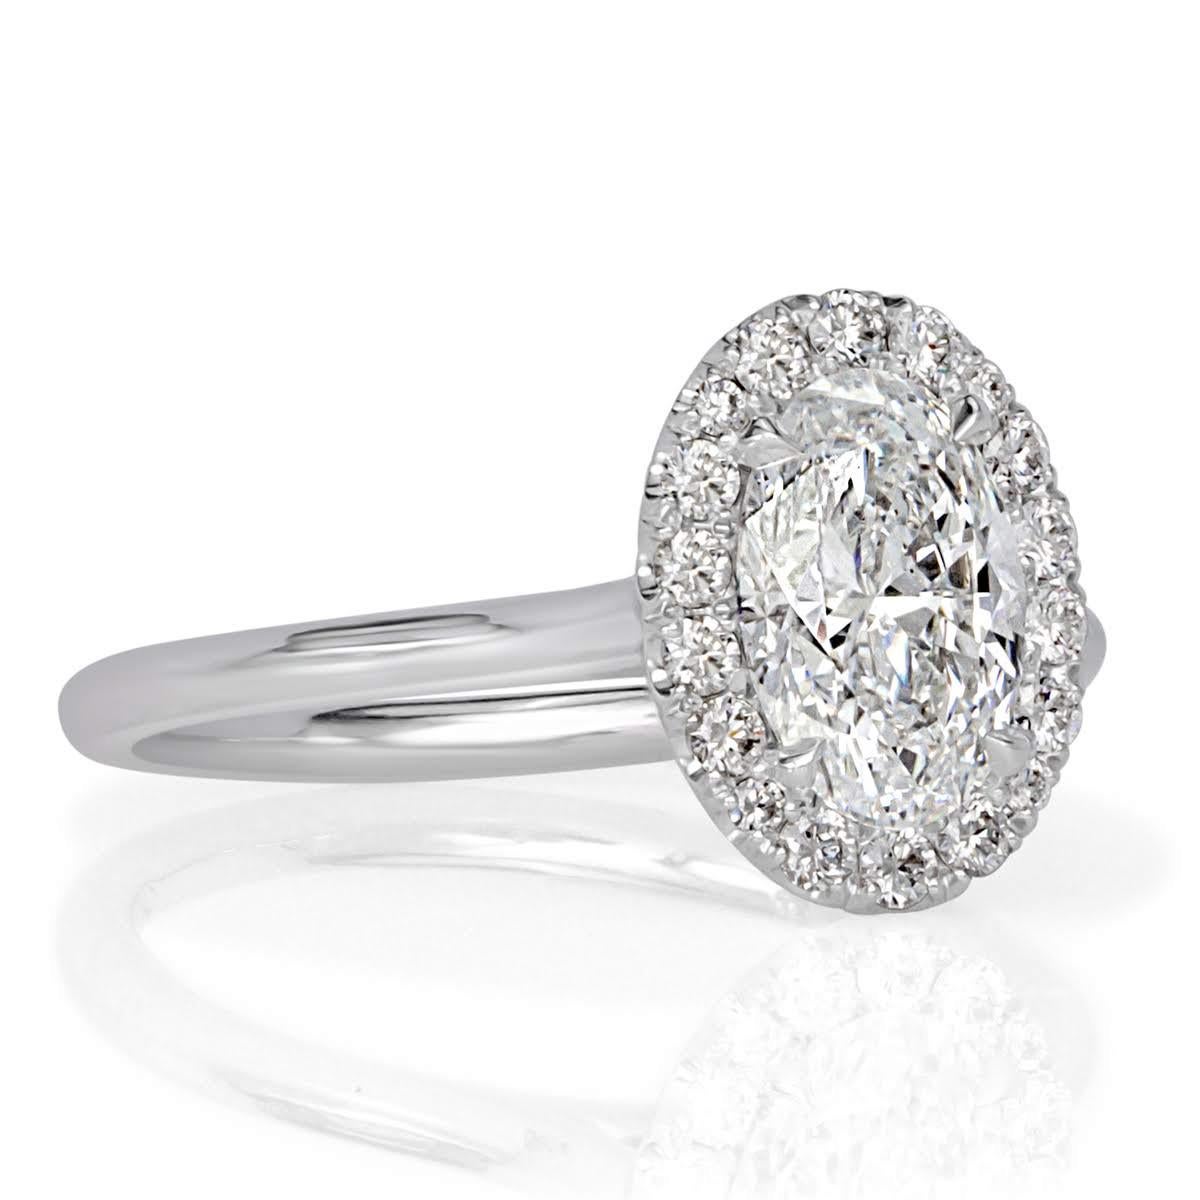 Cette magnifique bague de fiançailles en diamant met en valeur un exquis diamant central de taille ovale de 1,01 ct, certifié D-VS1 par le GIA. Elle est rehaussée d'un halo en micro-pavé et montée sur une délicate tige en platine. Les diamants